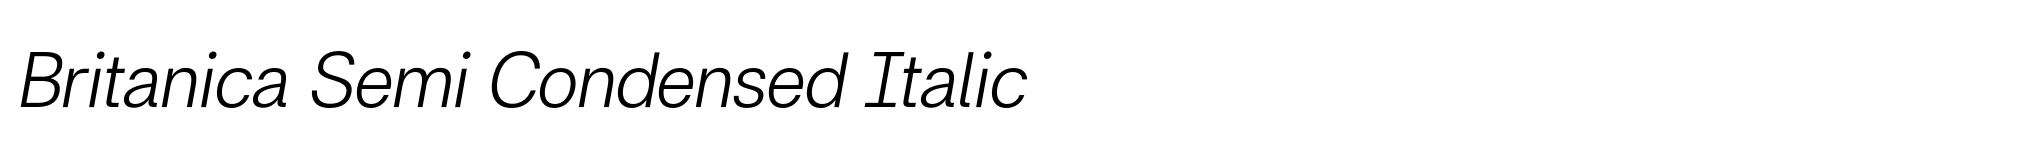 Britanica Semi Condensed Italic image